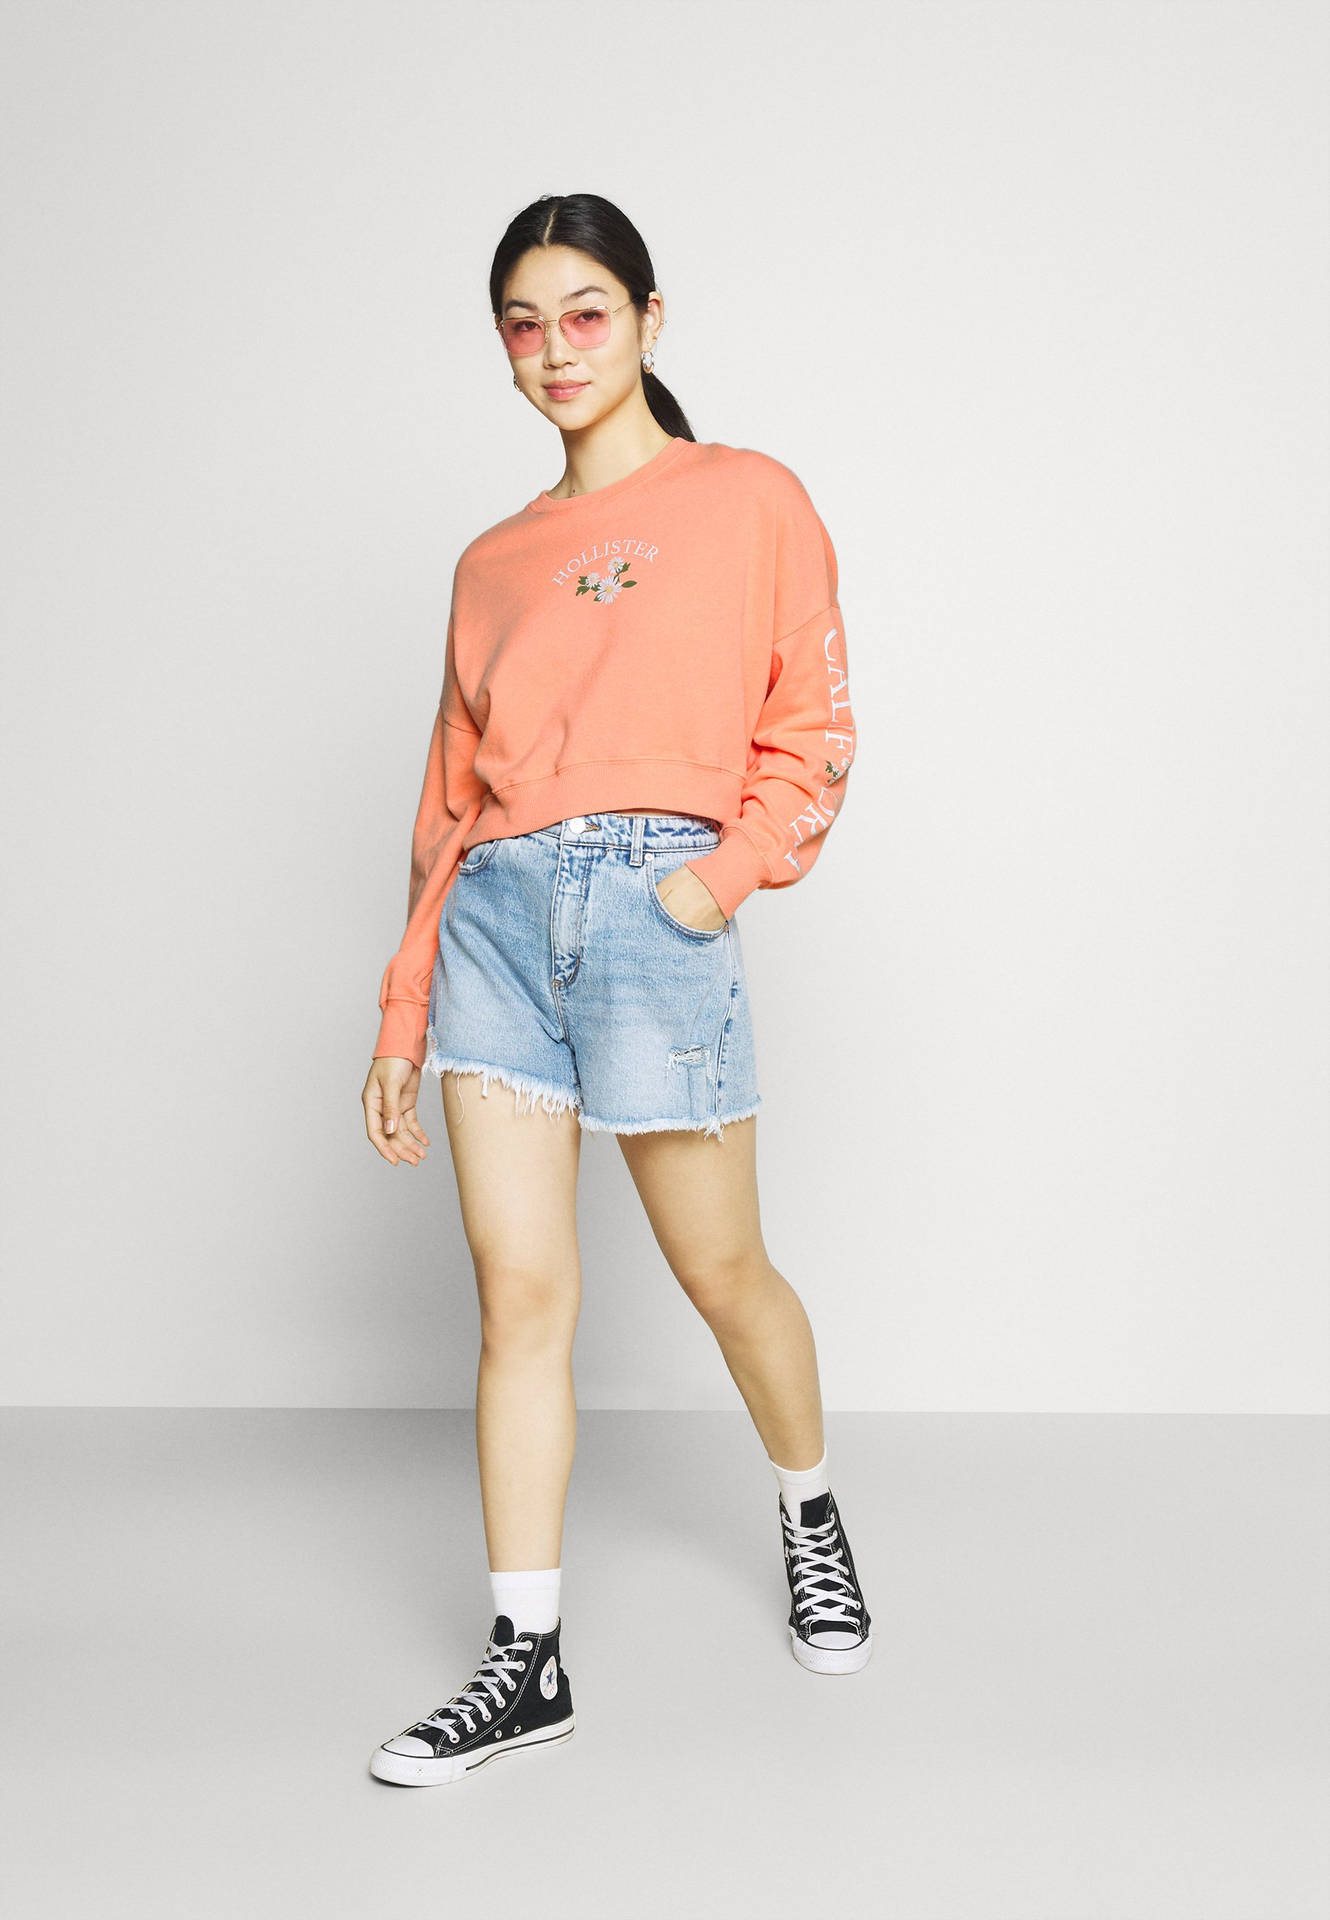 Model In Peach Hollister Sweatshirt Wallpaper